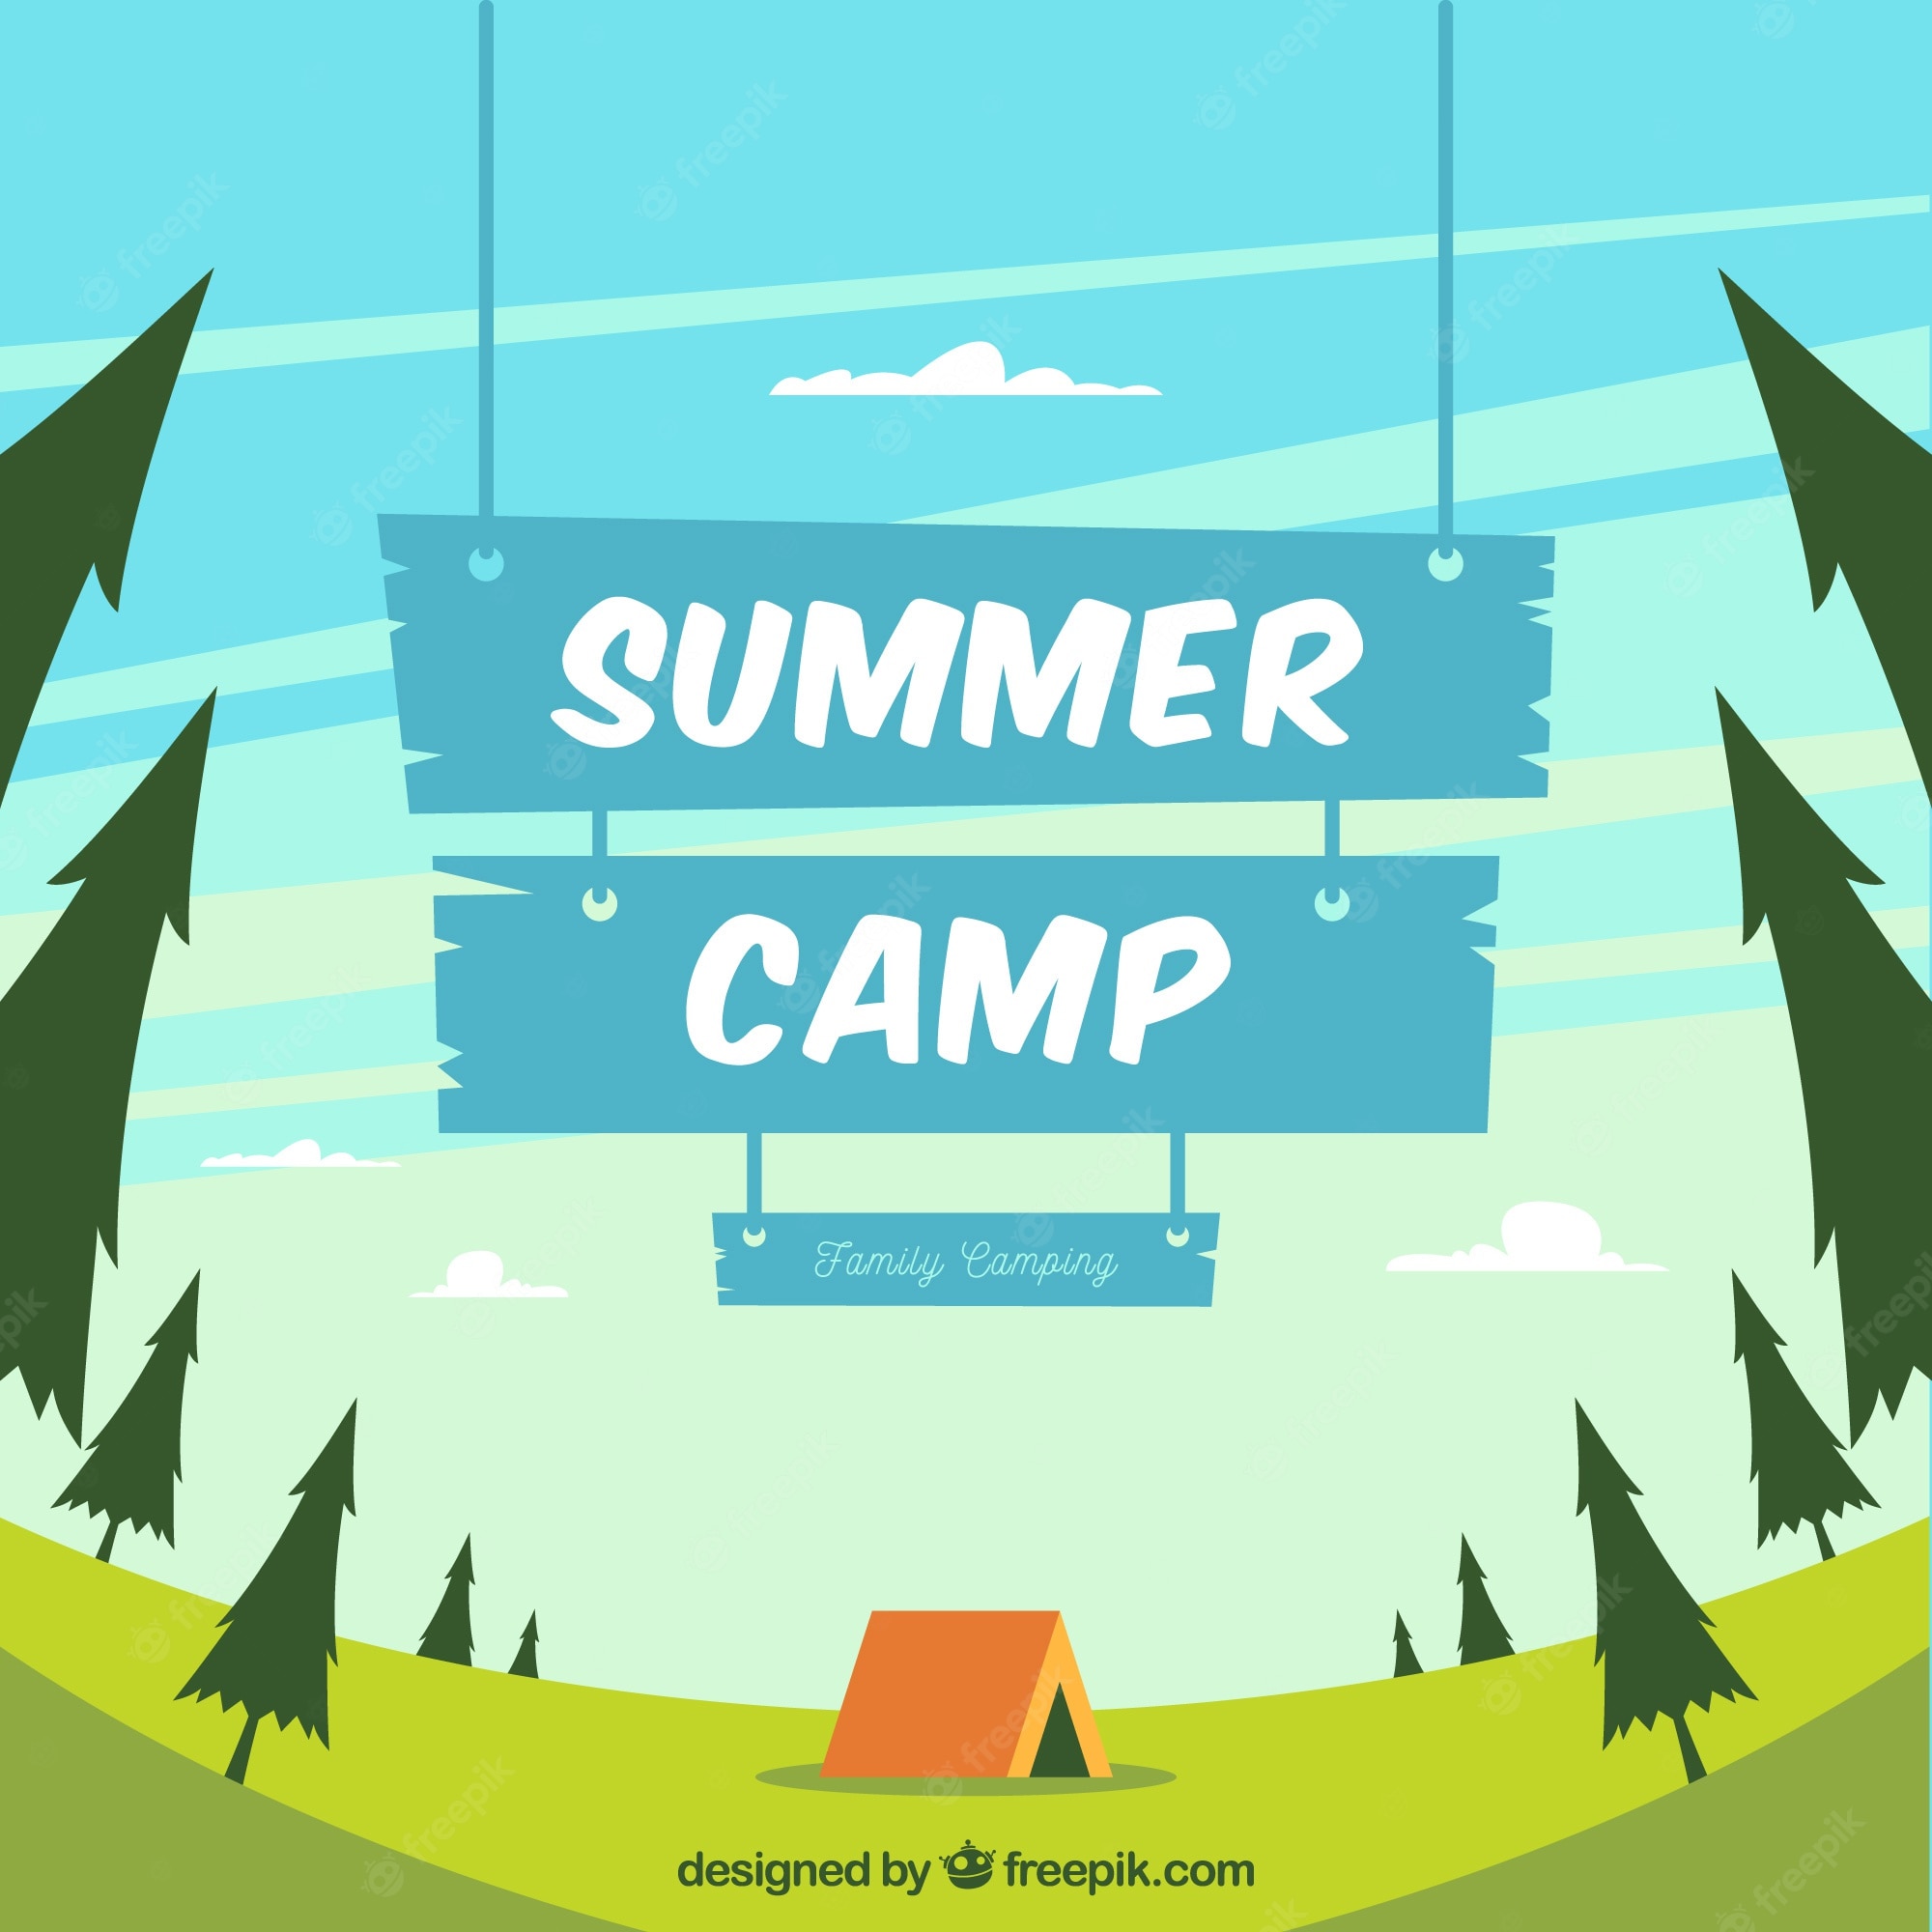 Summer camp background images